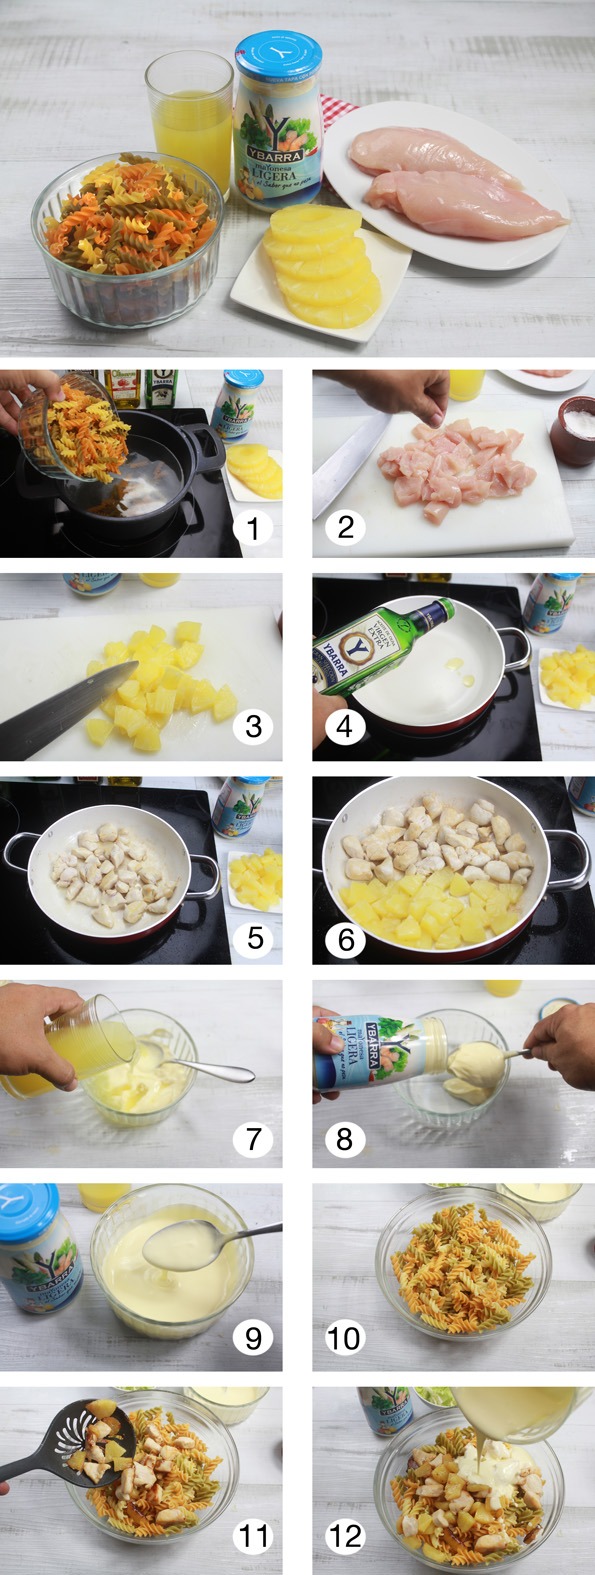 Ensalada de pasta con pollo y mayonesa - Ybarra en tu cocina